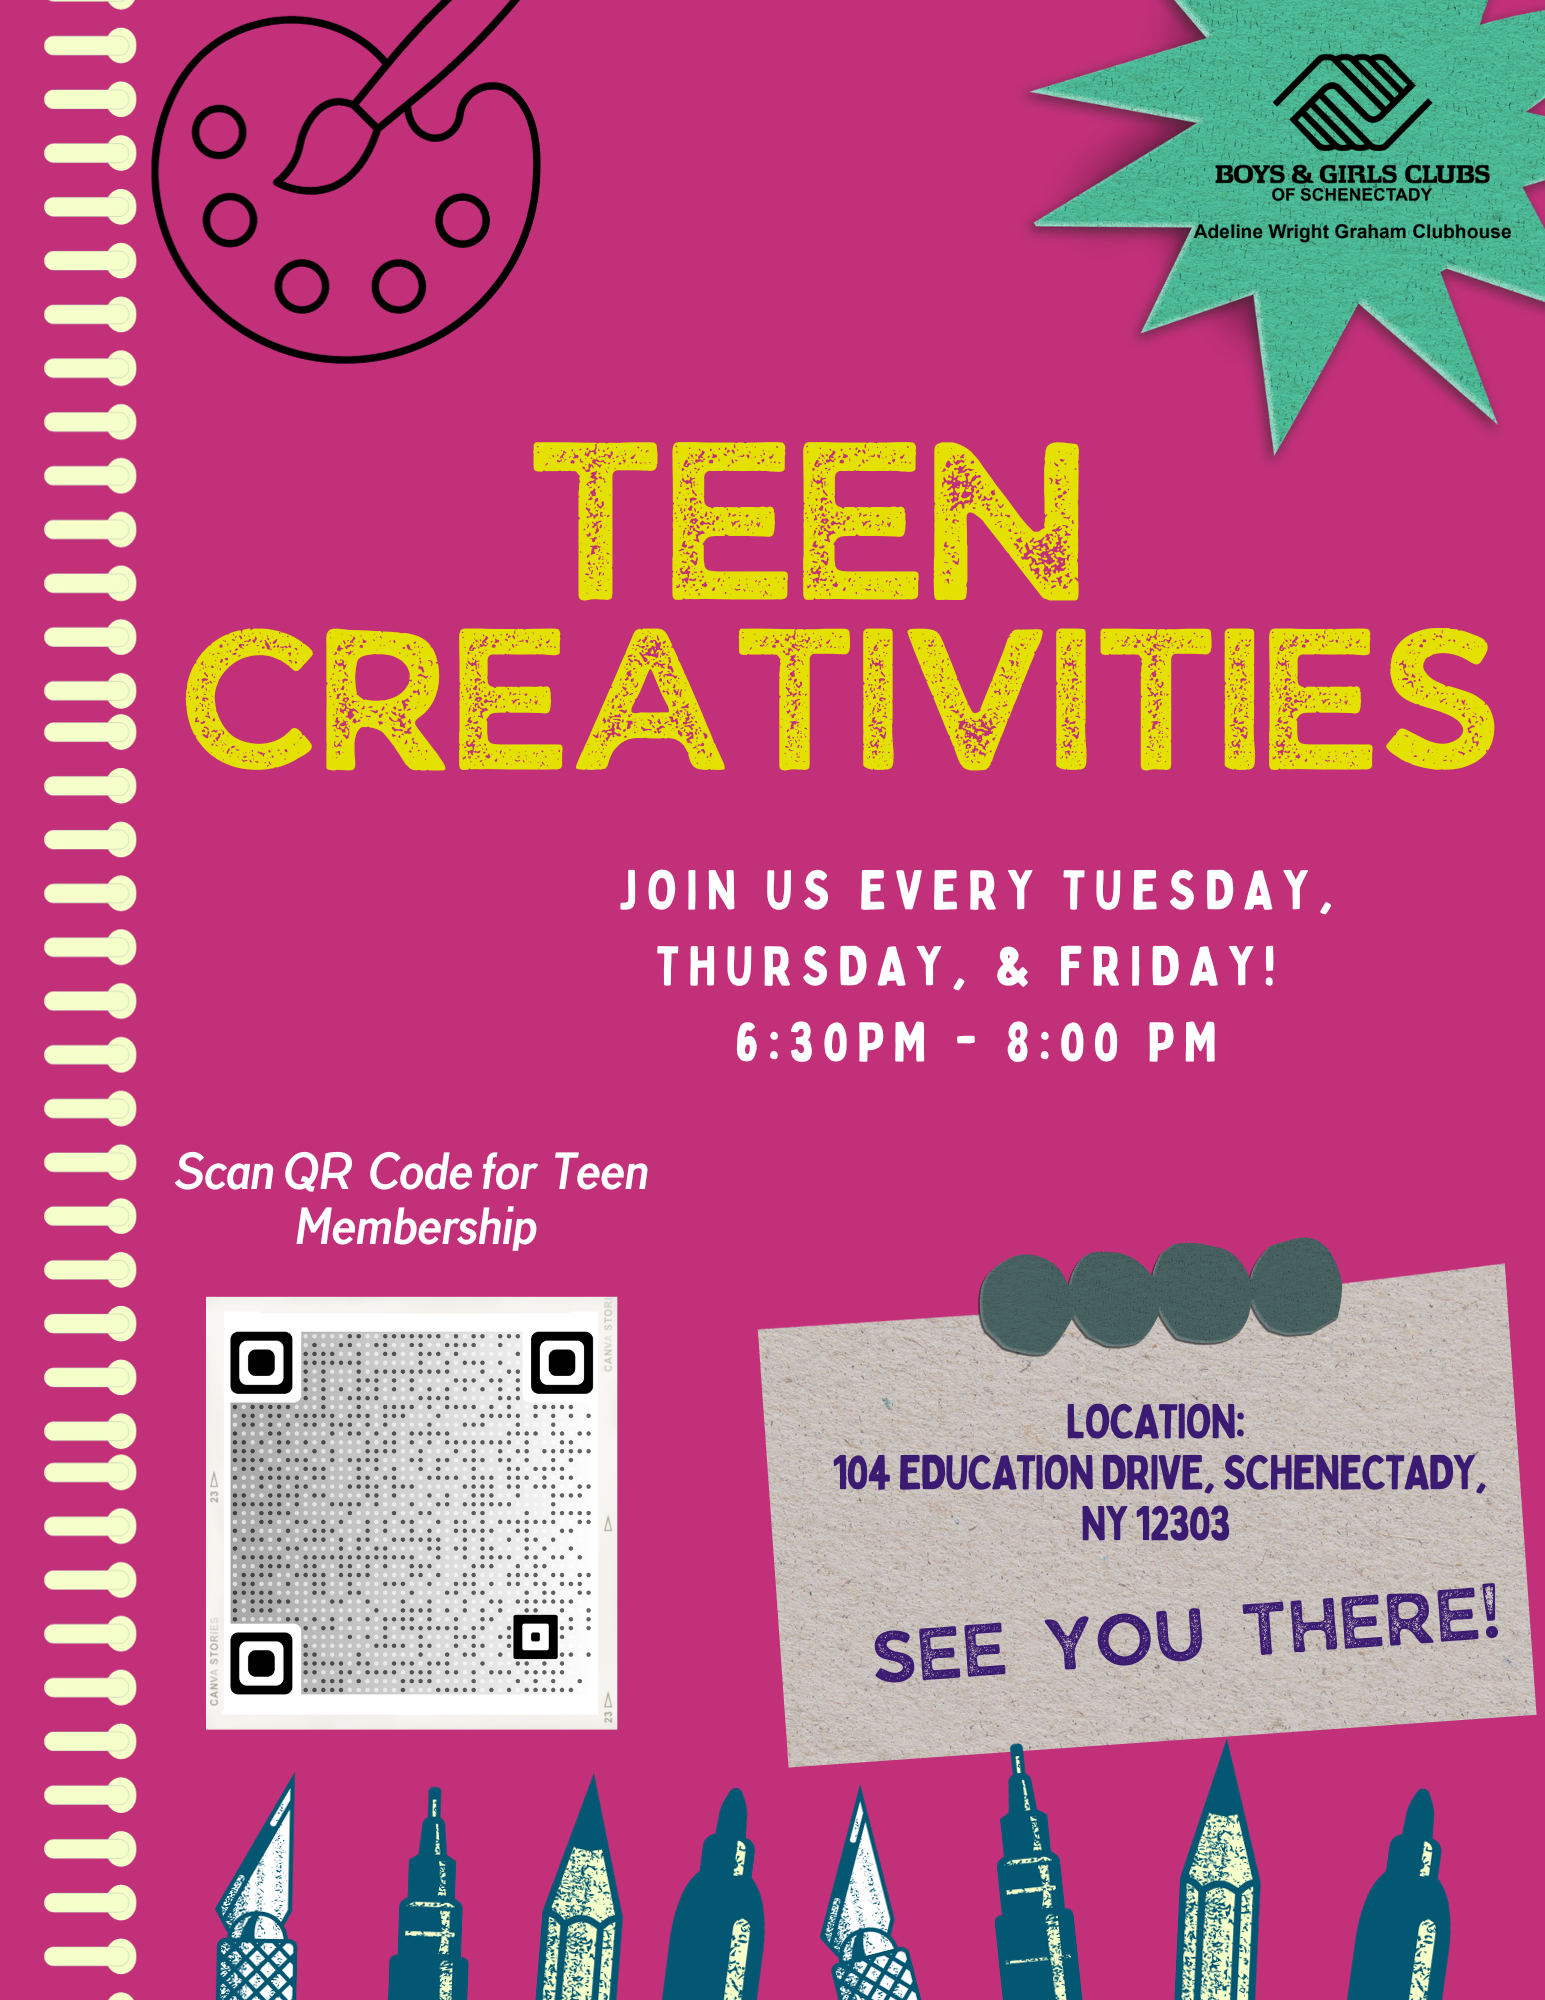 Teen Creativities - Boys & Girls Clubs